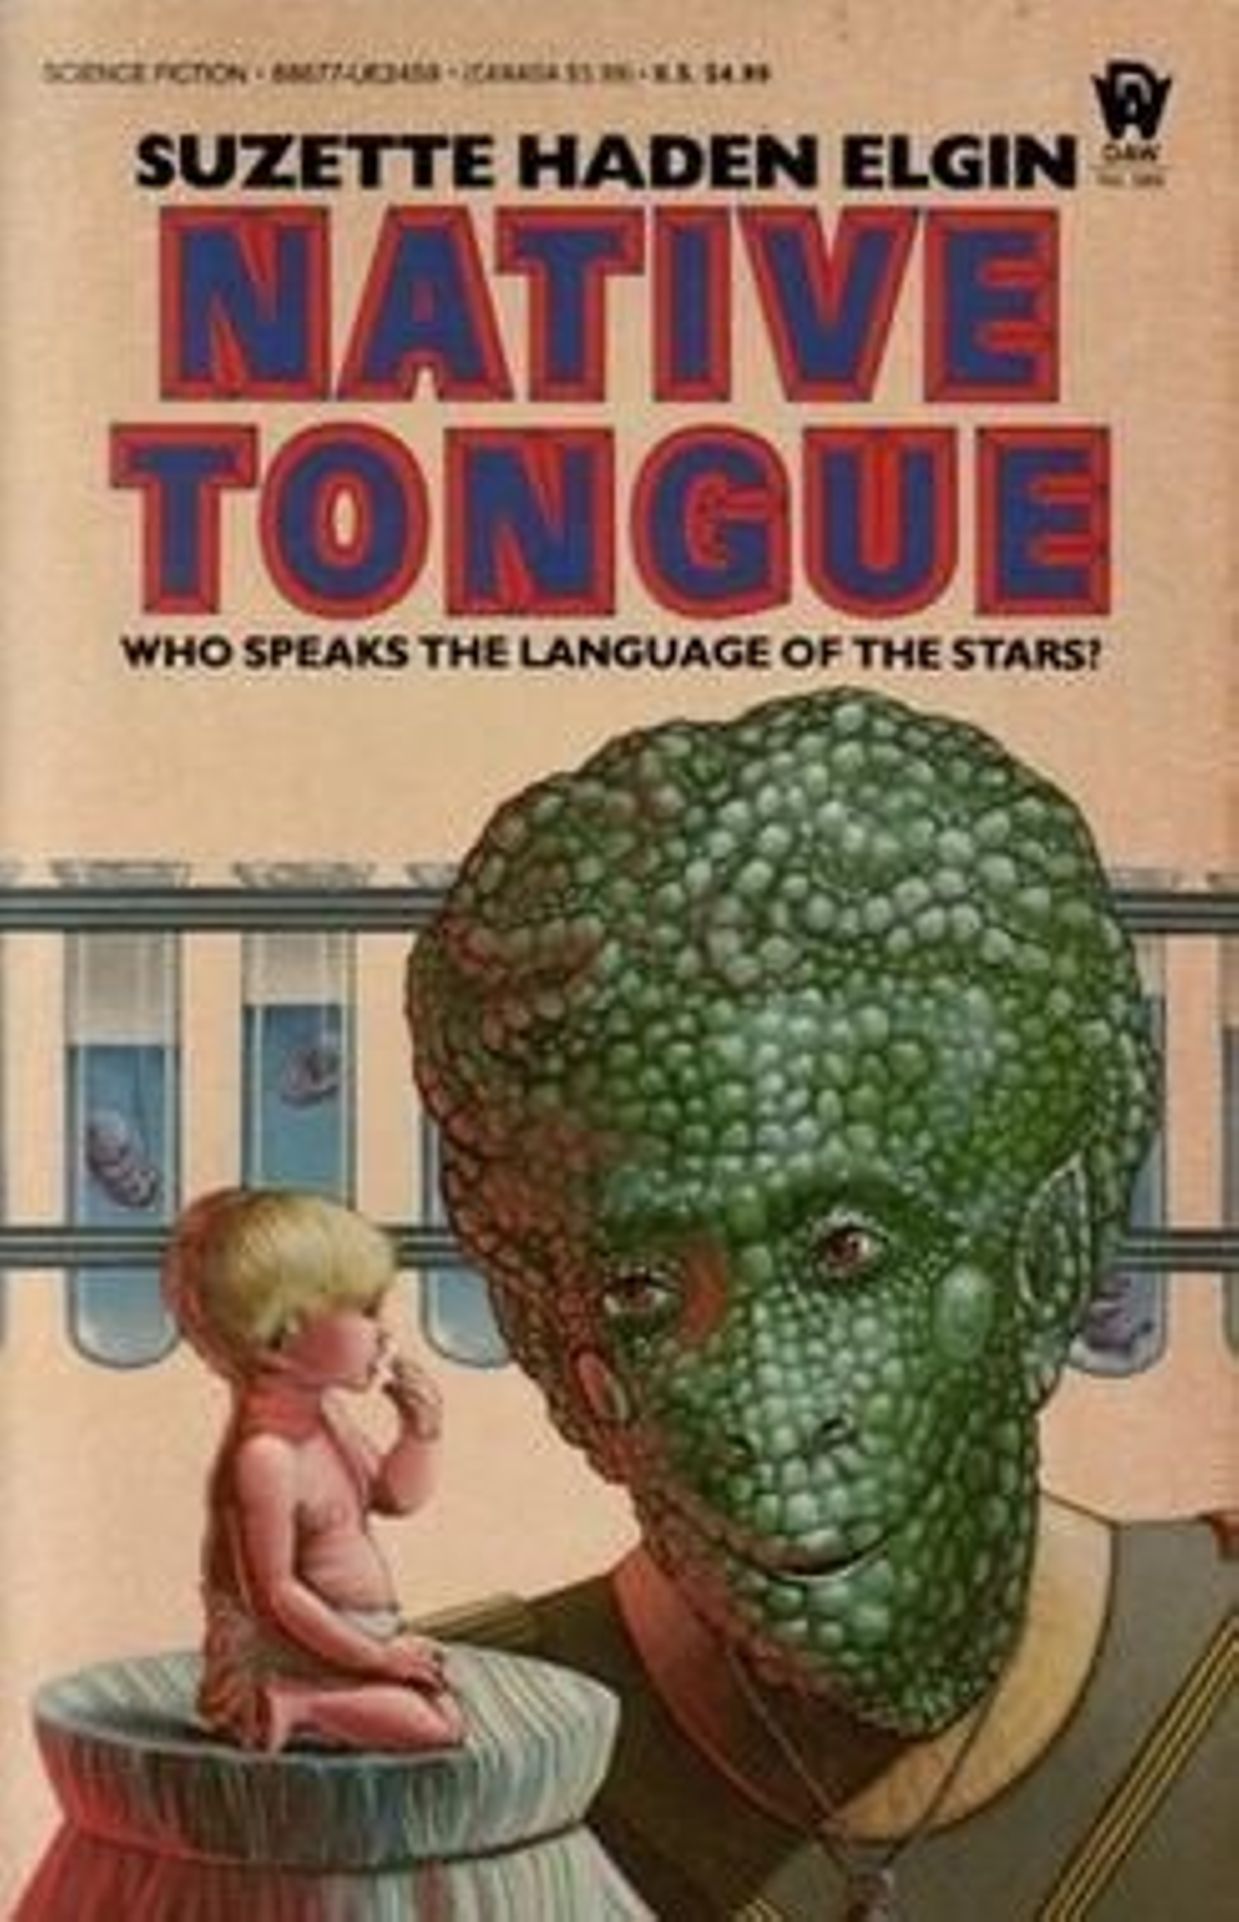 Première de couverture du roman féministe "Native Tongue" de Suzette Haden Elgin. 